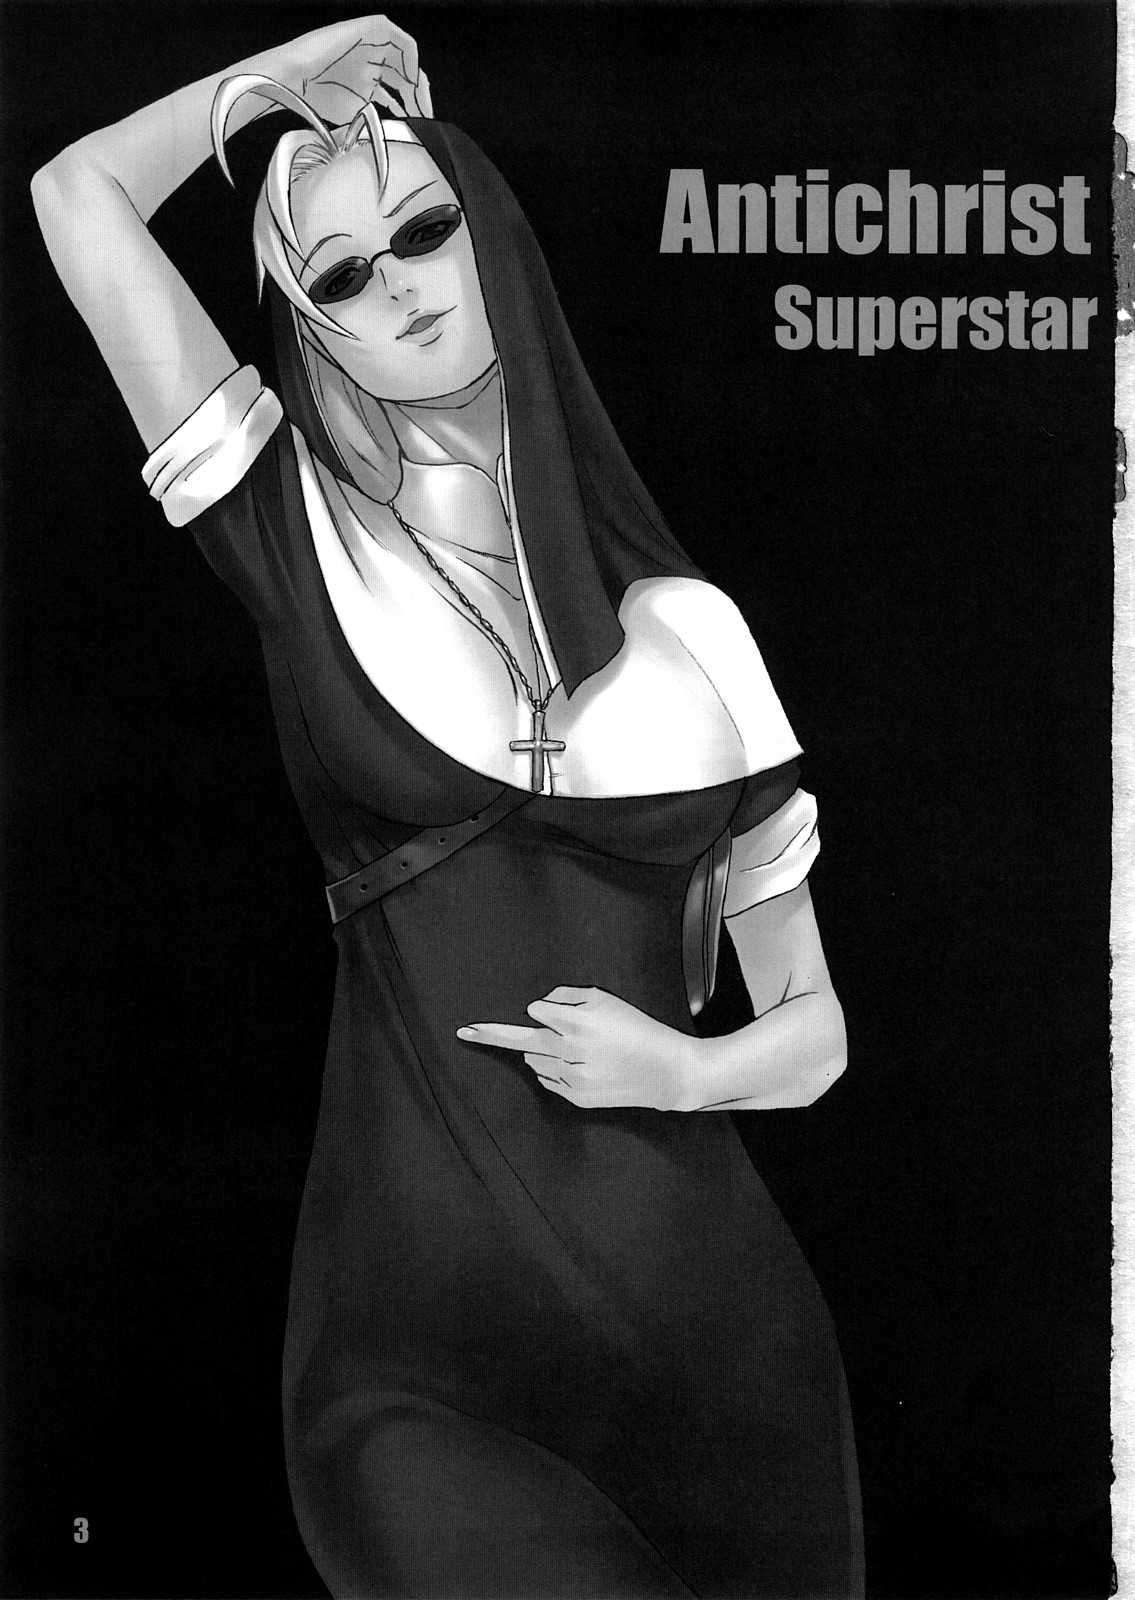 Antichrist Superstar by Motchie 